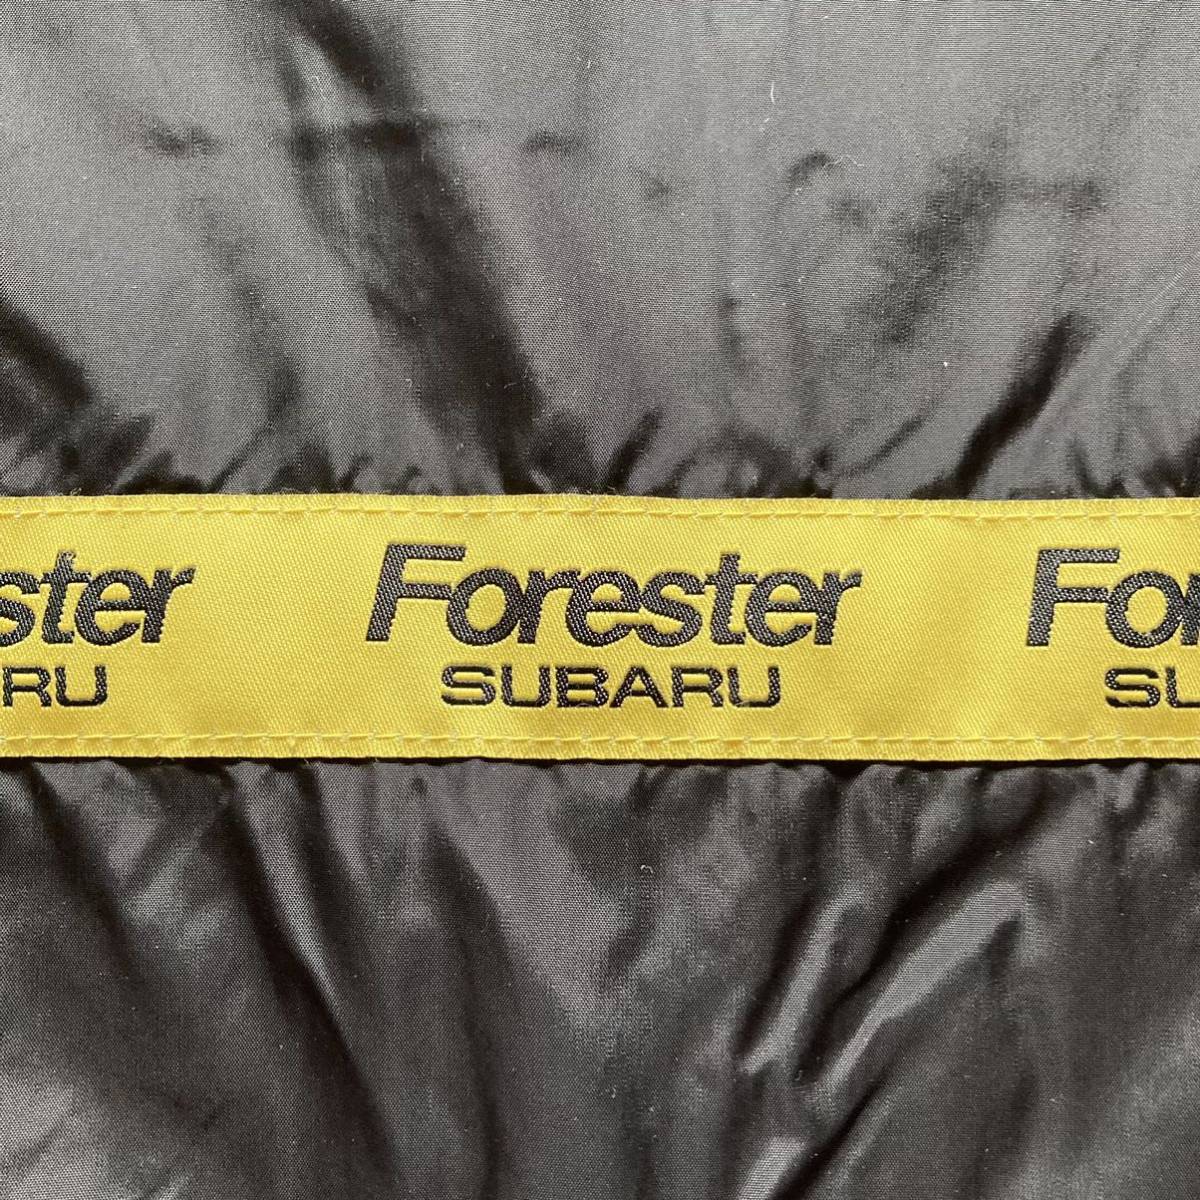 SUBARU Subaru FORESTER Forester не продается Indy дыра Police 24 час выносливость гонки жакет джемпер F